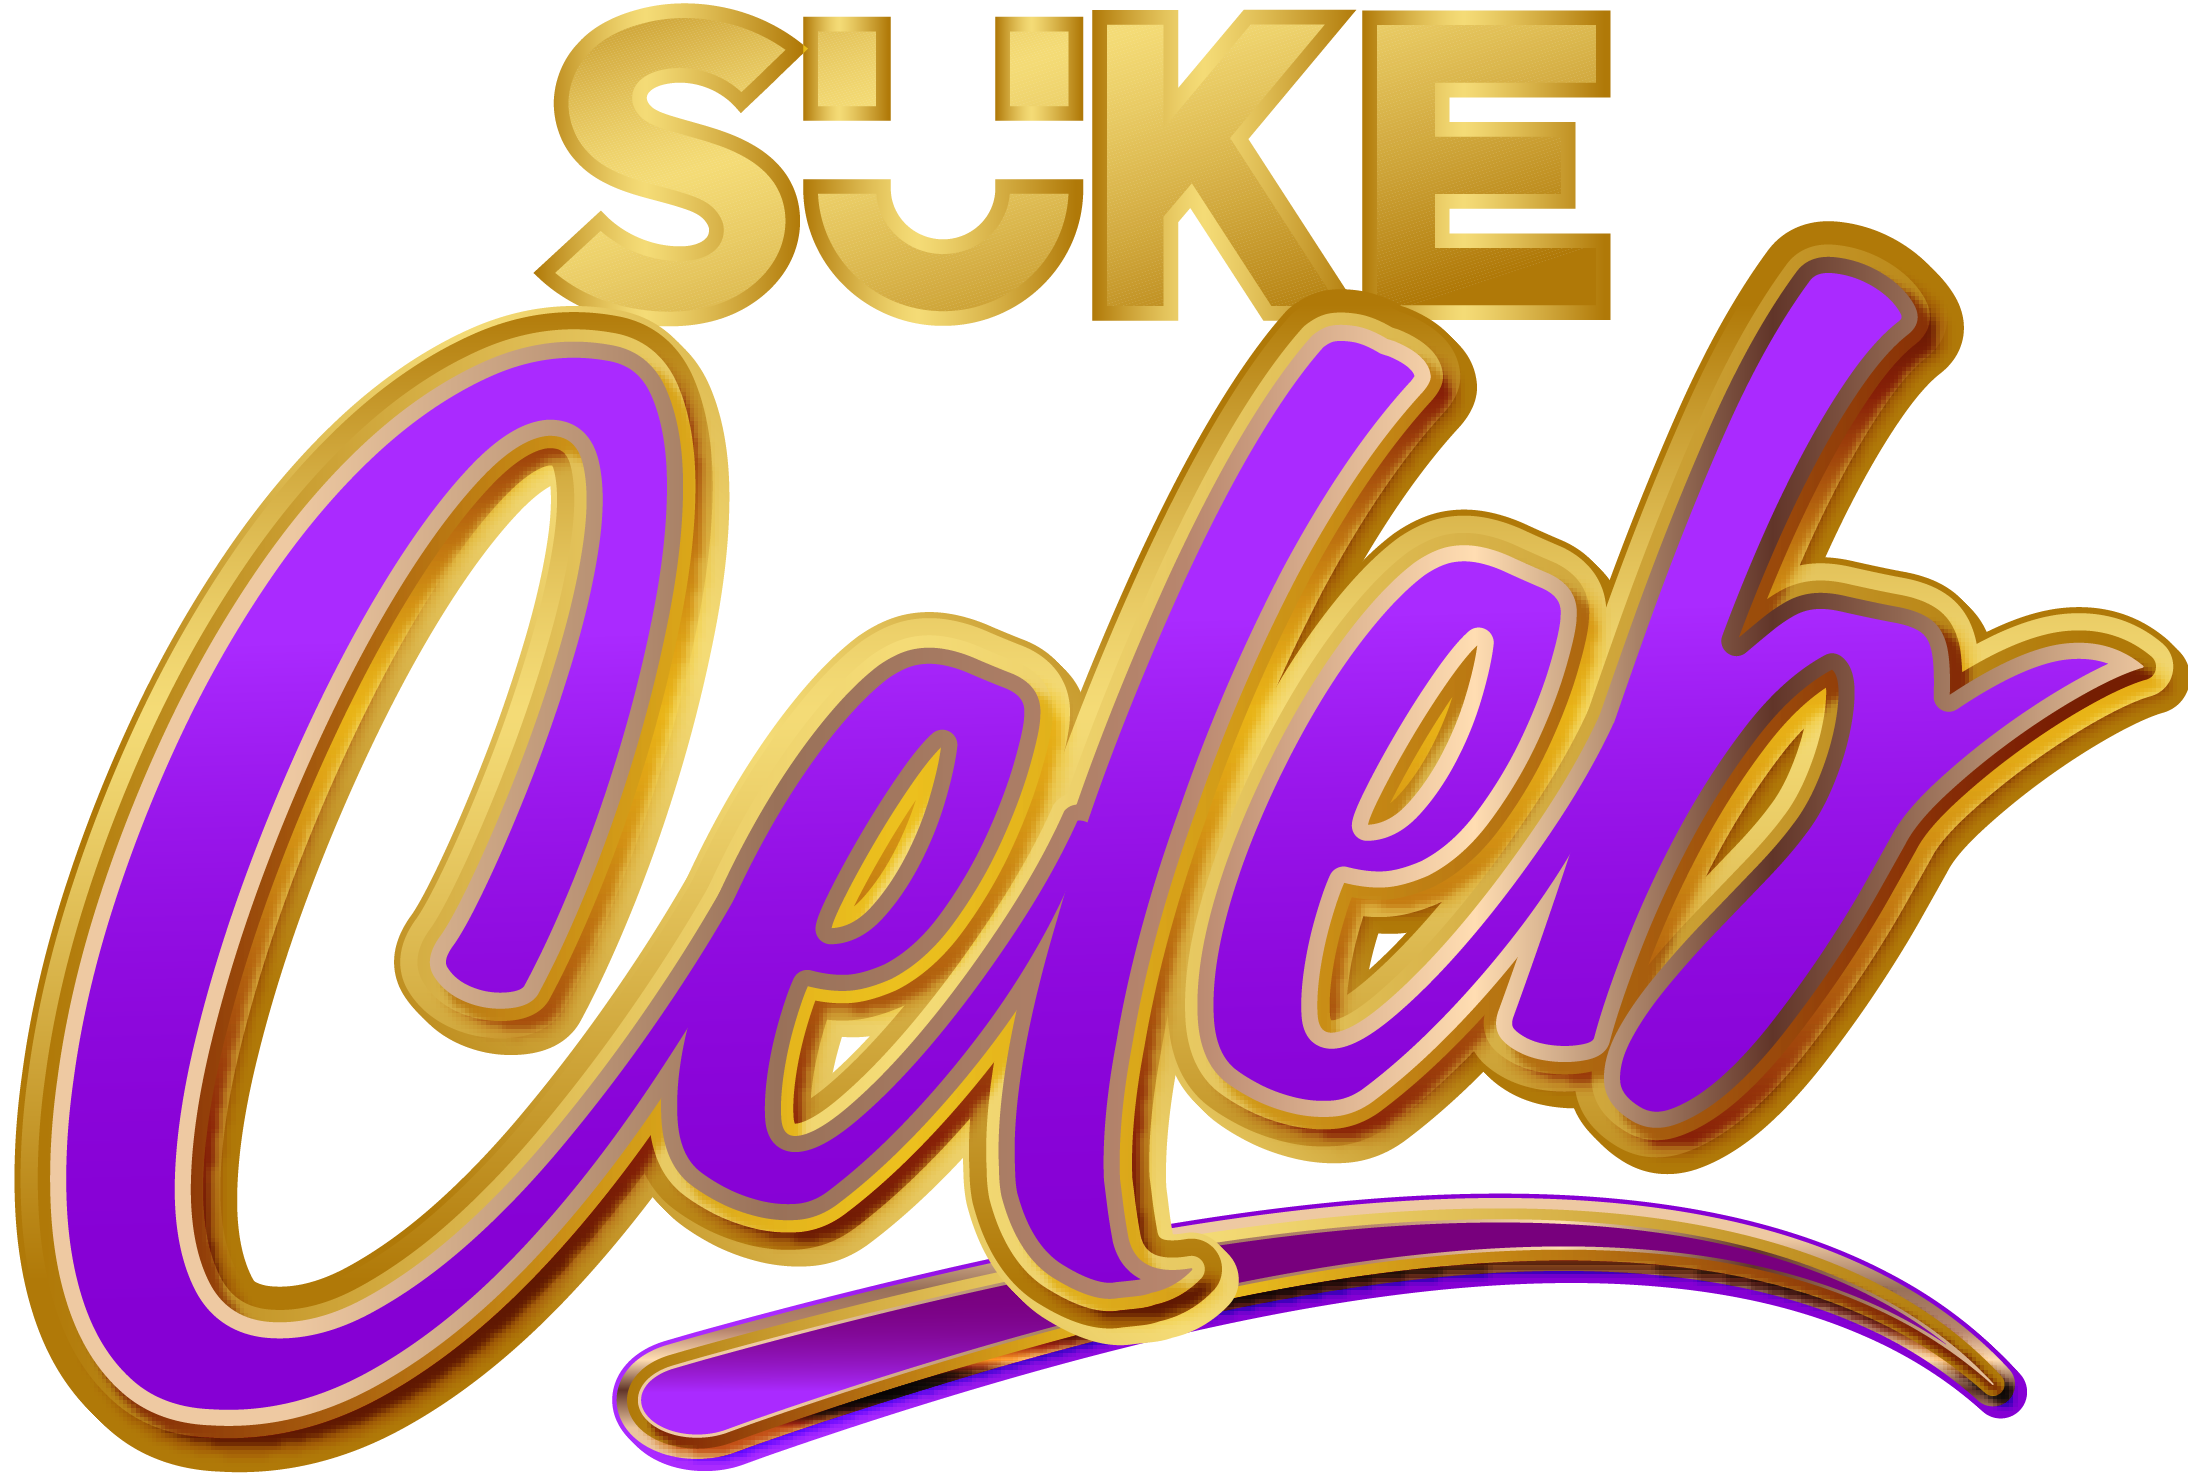 STV_Suke_Celeb